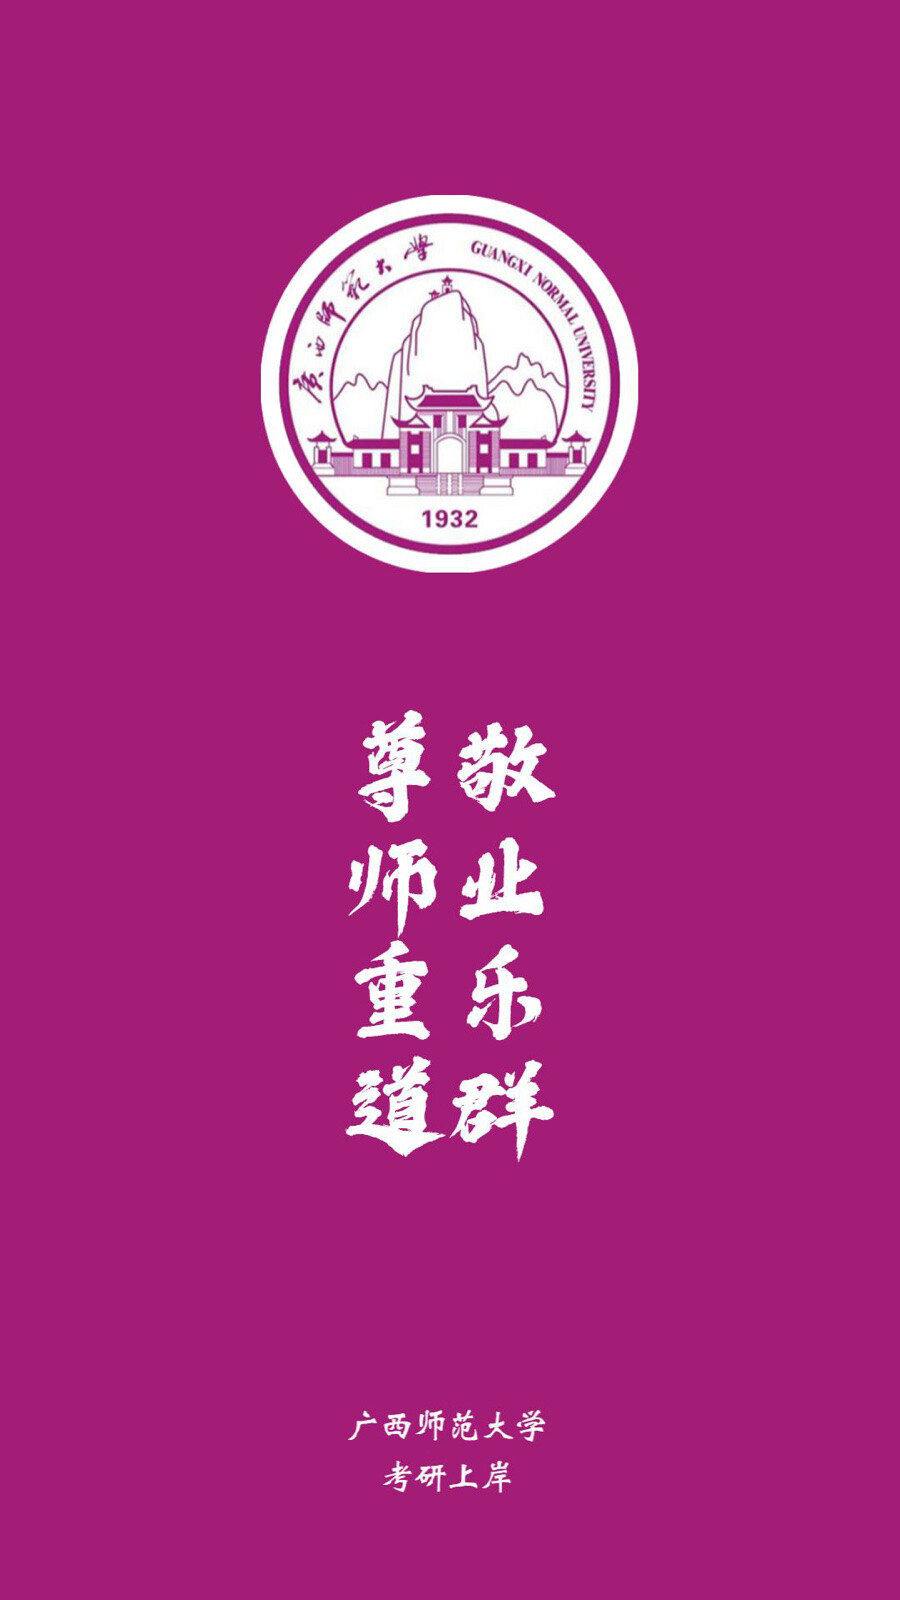 广西师范大学校徽高清图片